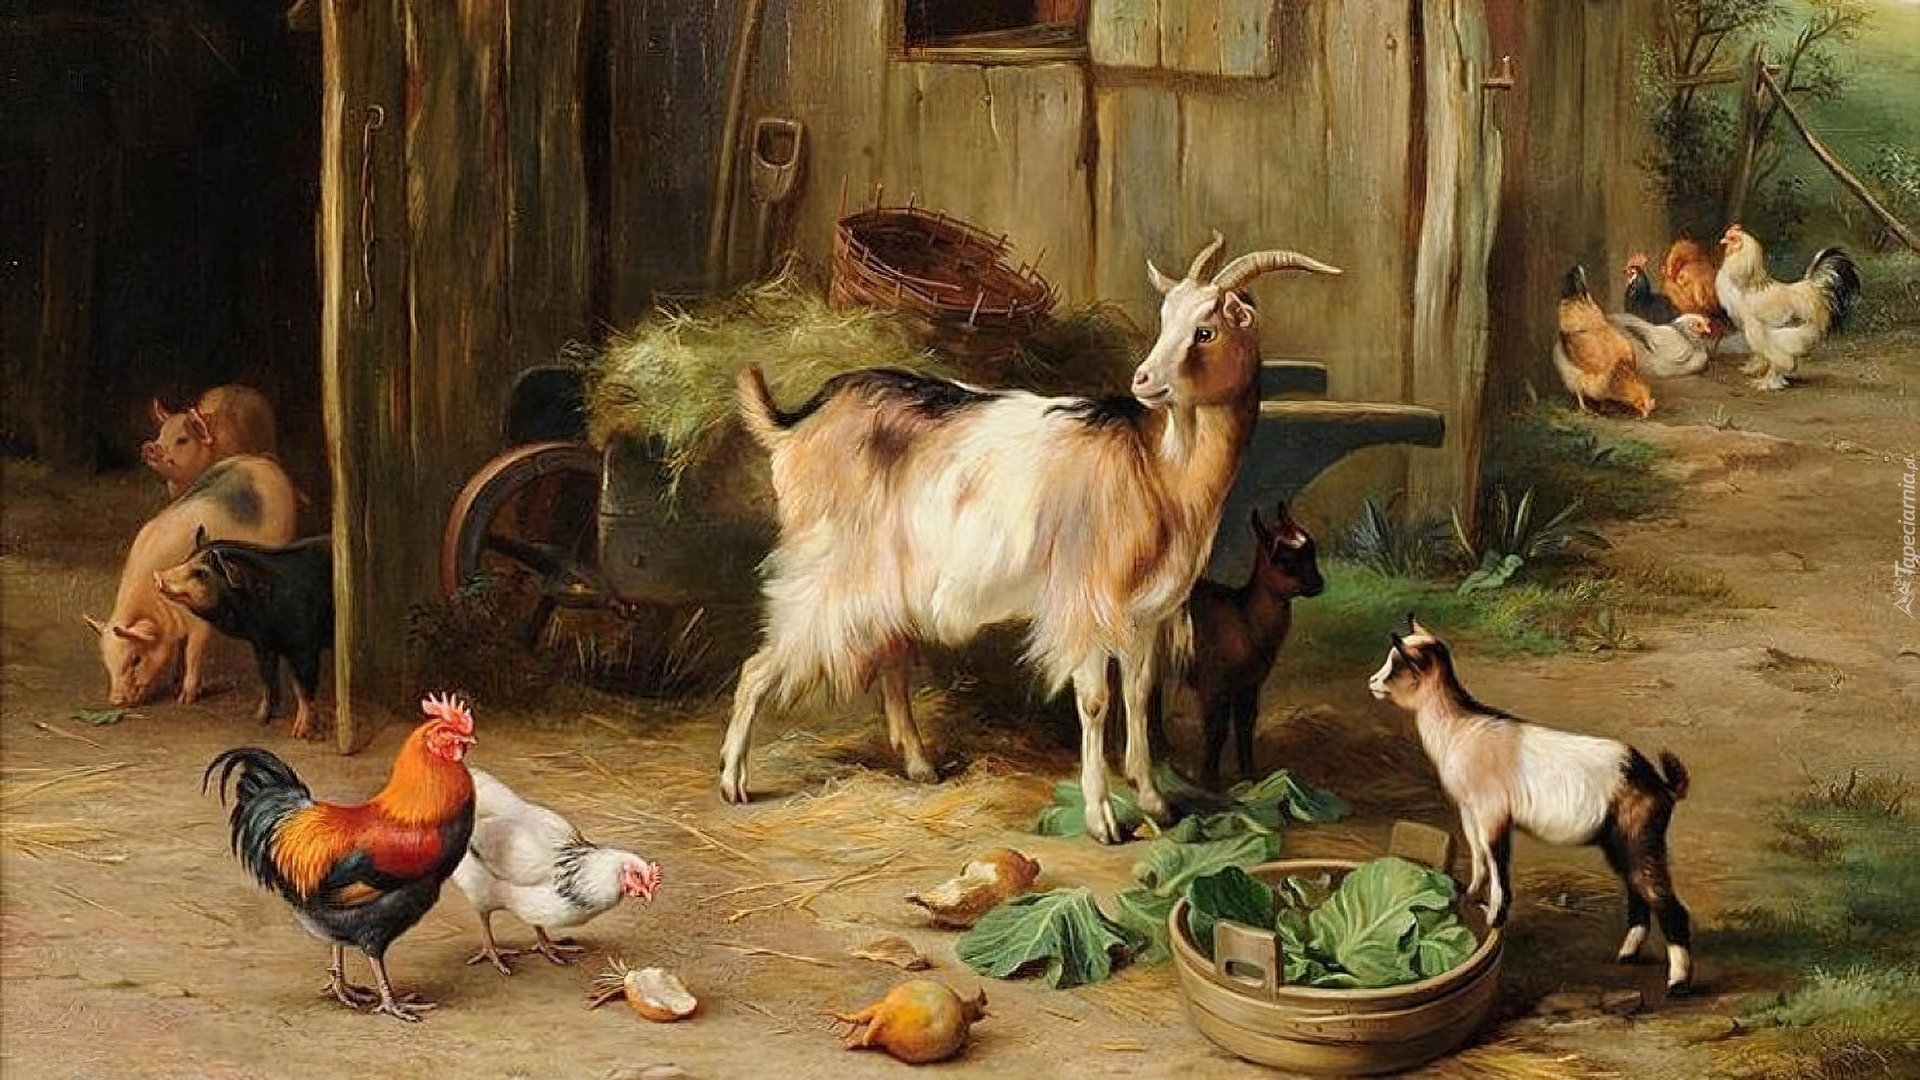 Koza, Kury, Gospodarstwo, Edgar Hunt